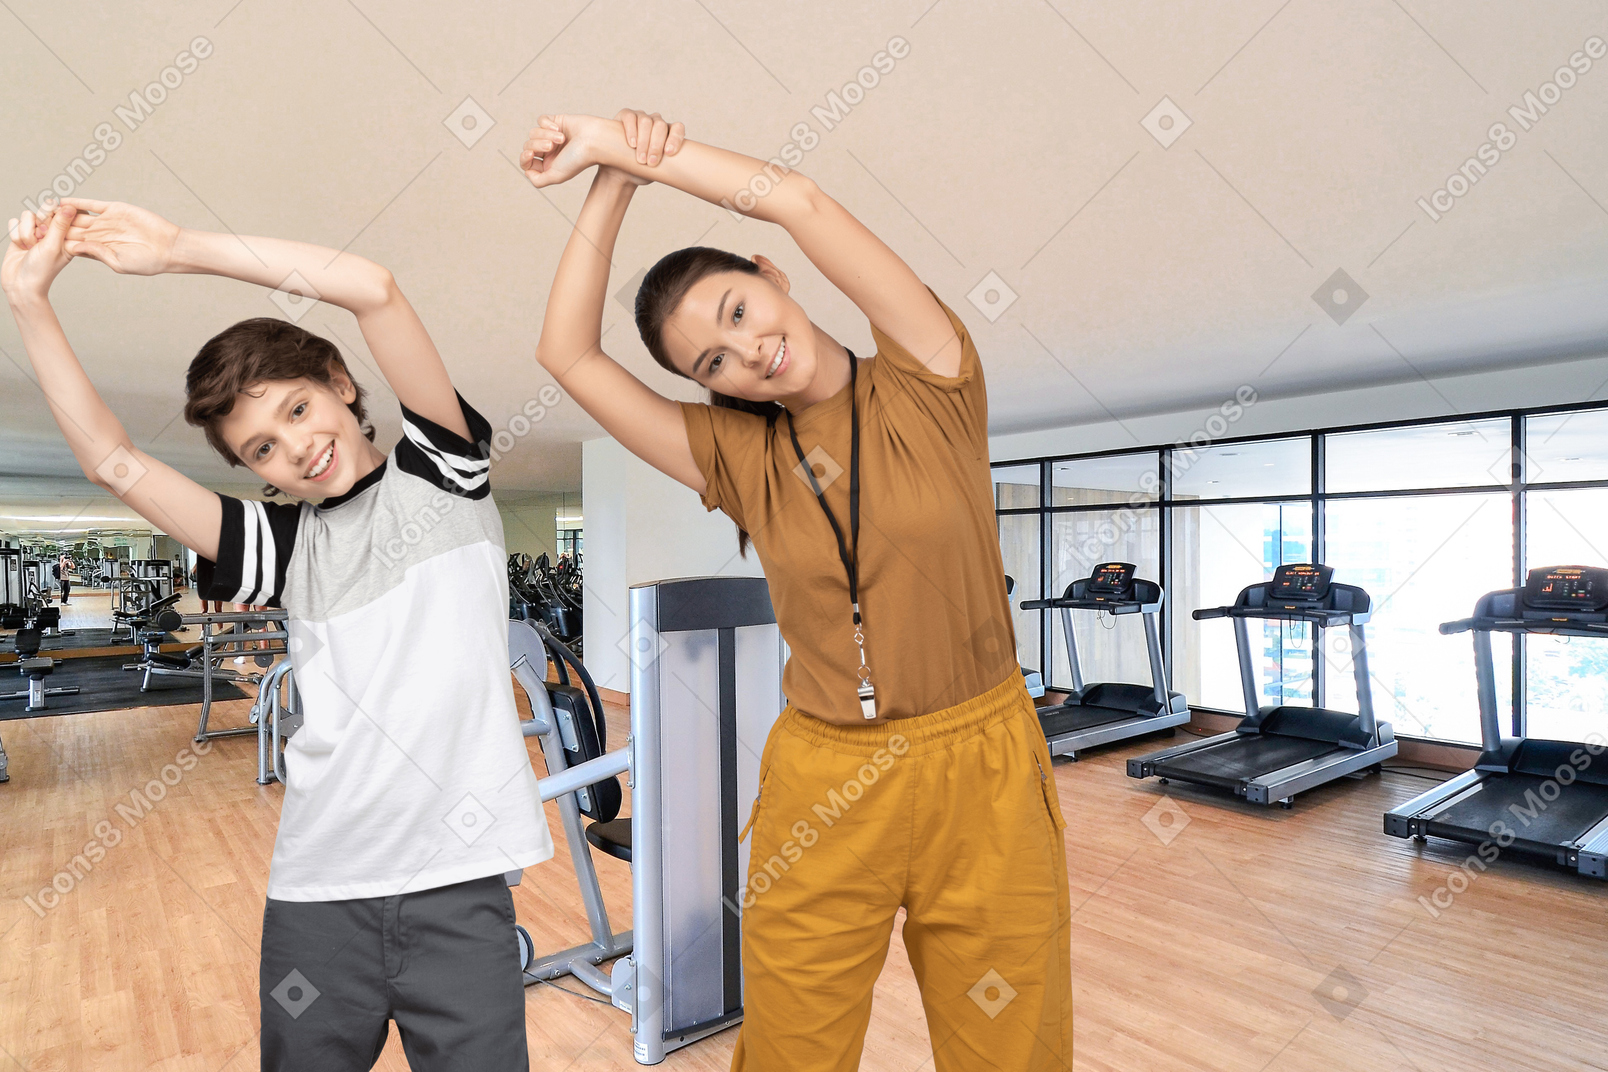 Frau und junge trainieren in einem fitnessstudio